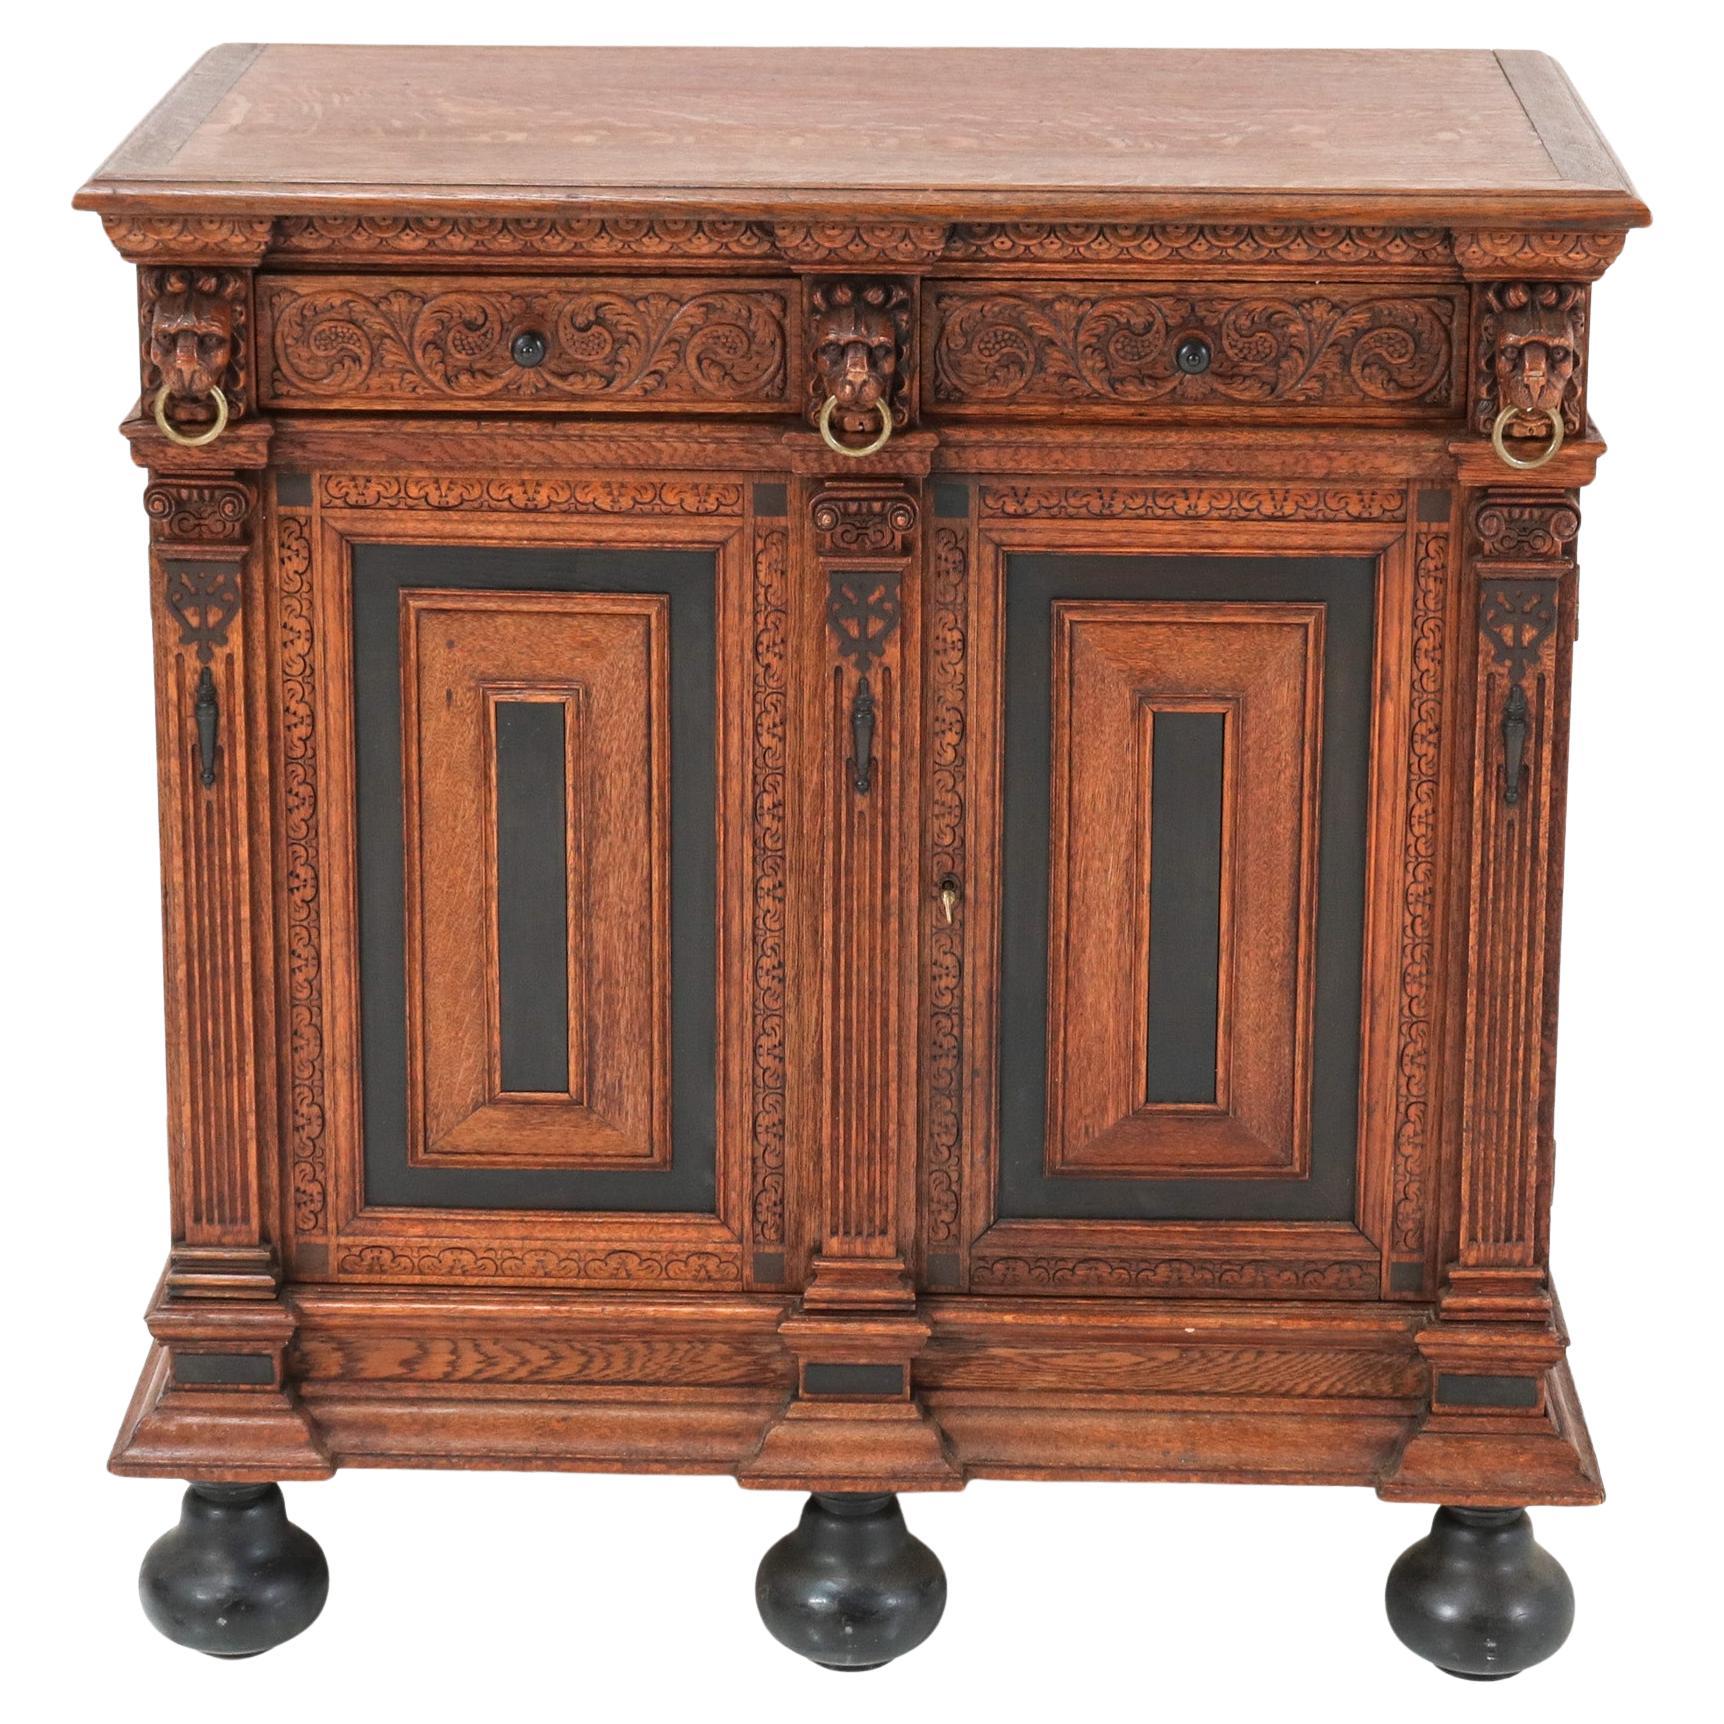 Oak Renaissance Revival Cabinet, 1900s